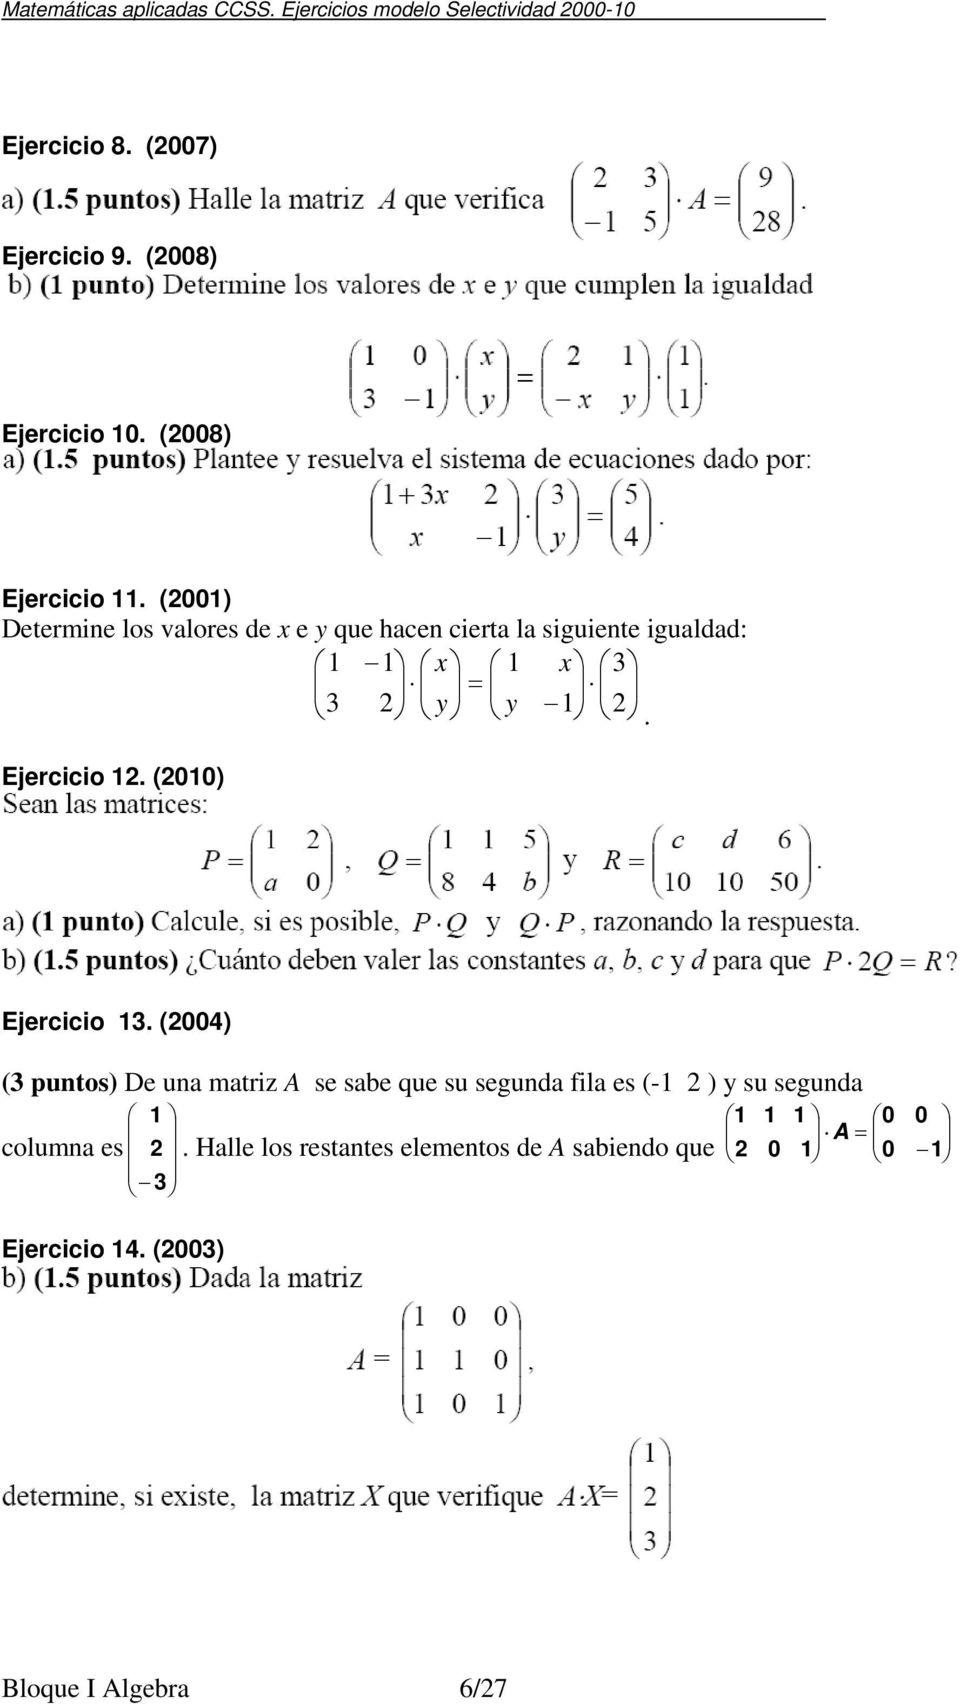 (8) Ejercicio. () Determine los valores de x e y que hacen cierta la siguiente igualdad: = 3 3 y x y x.